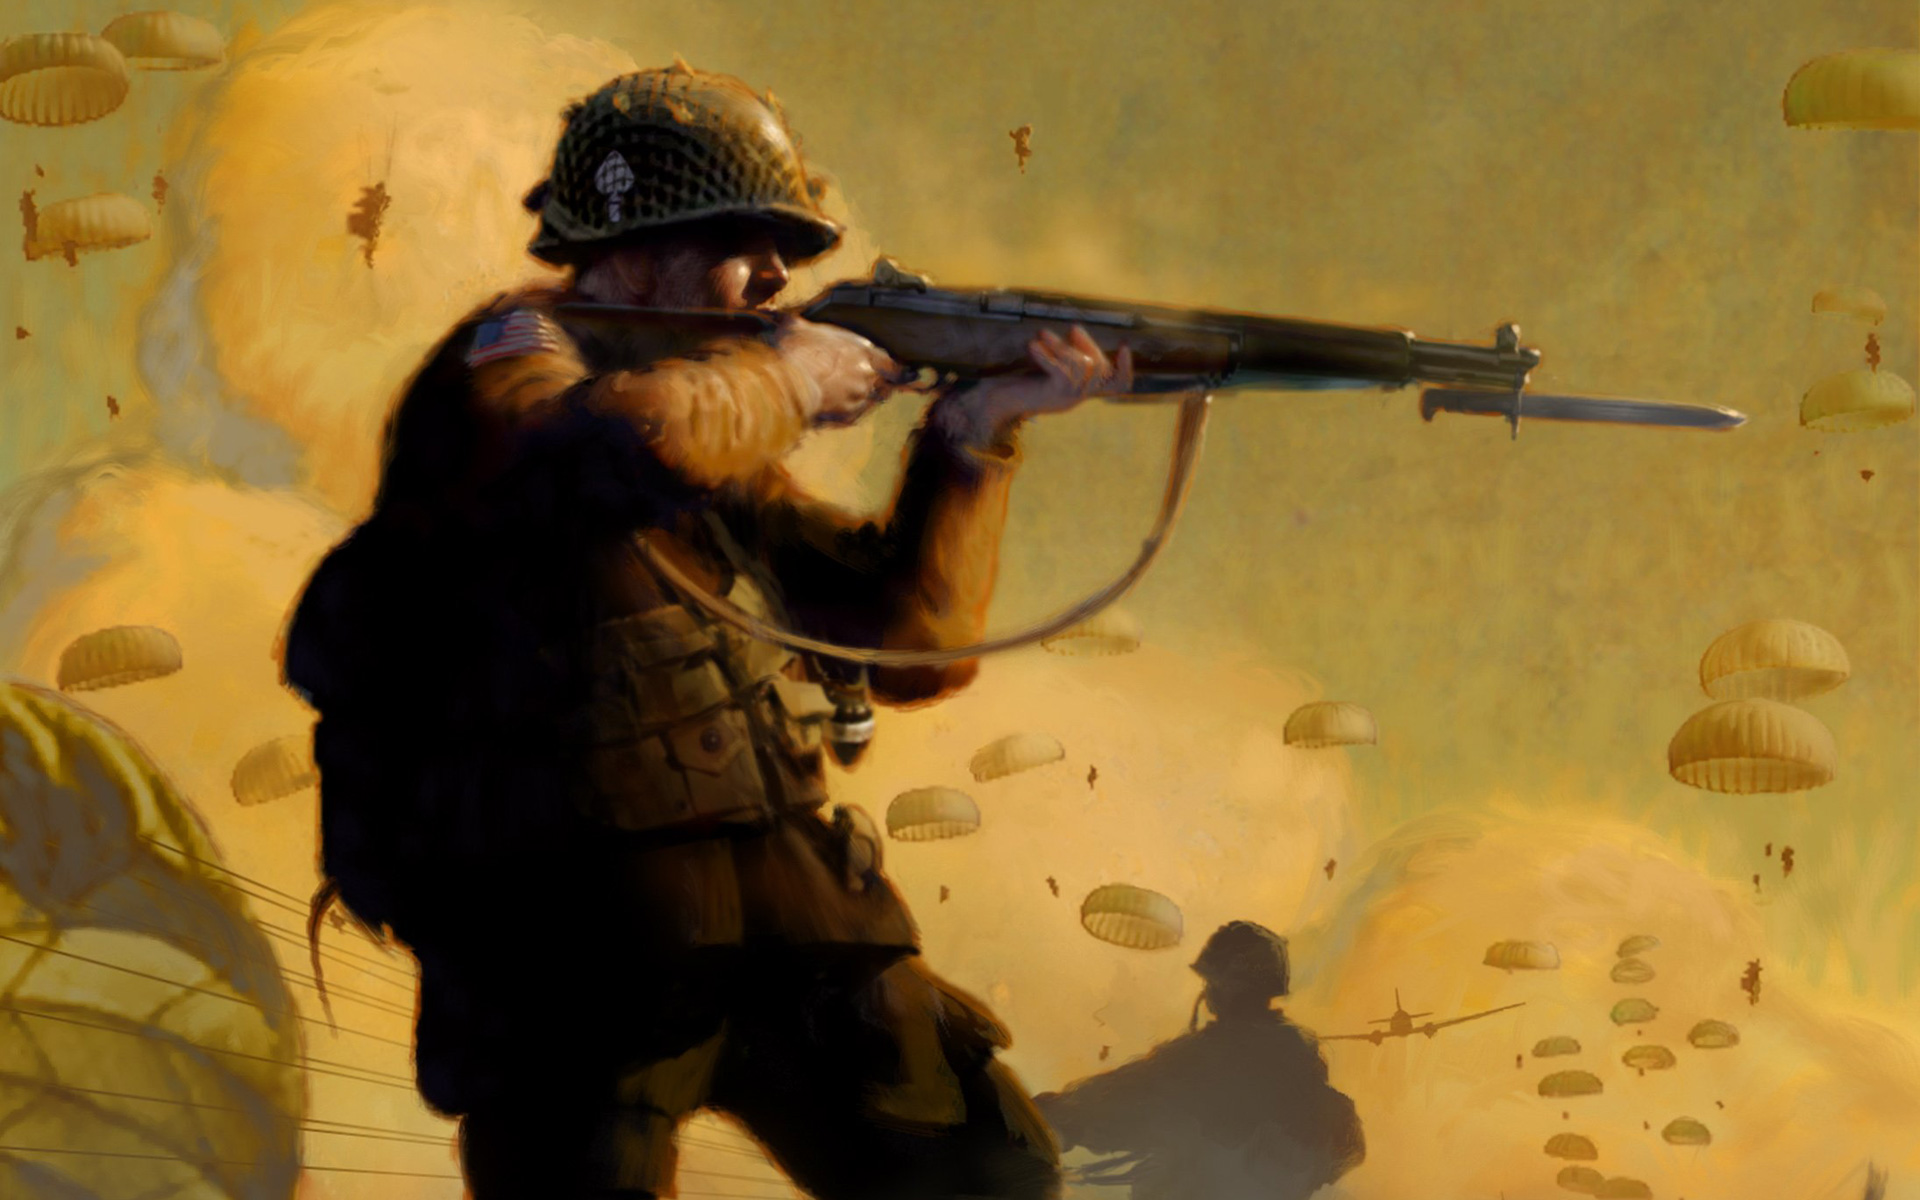 47+] Medal of Honor Frontline Wallpaper - WallpaperSafari